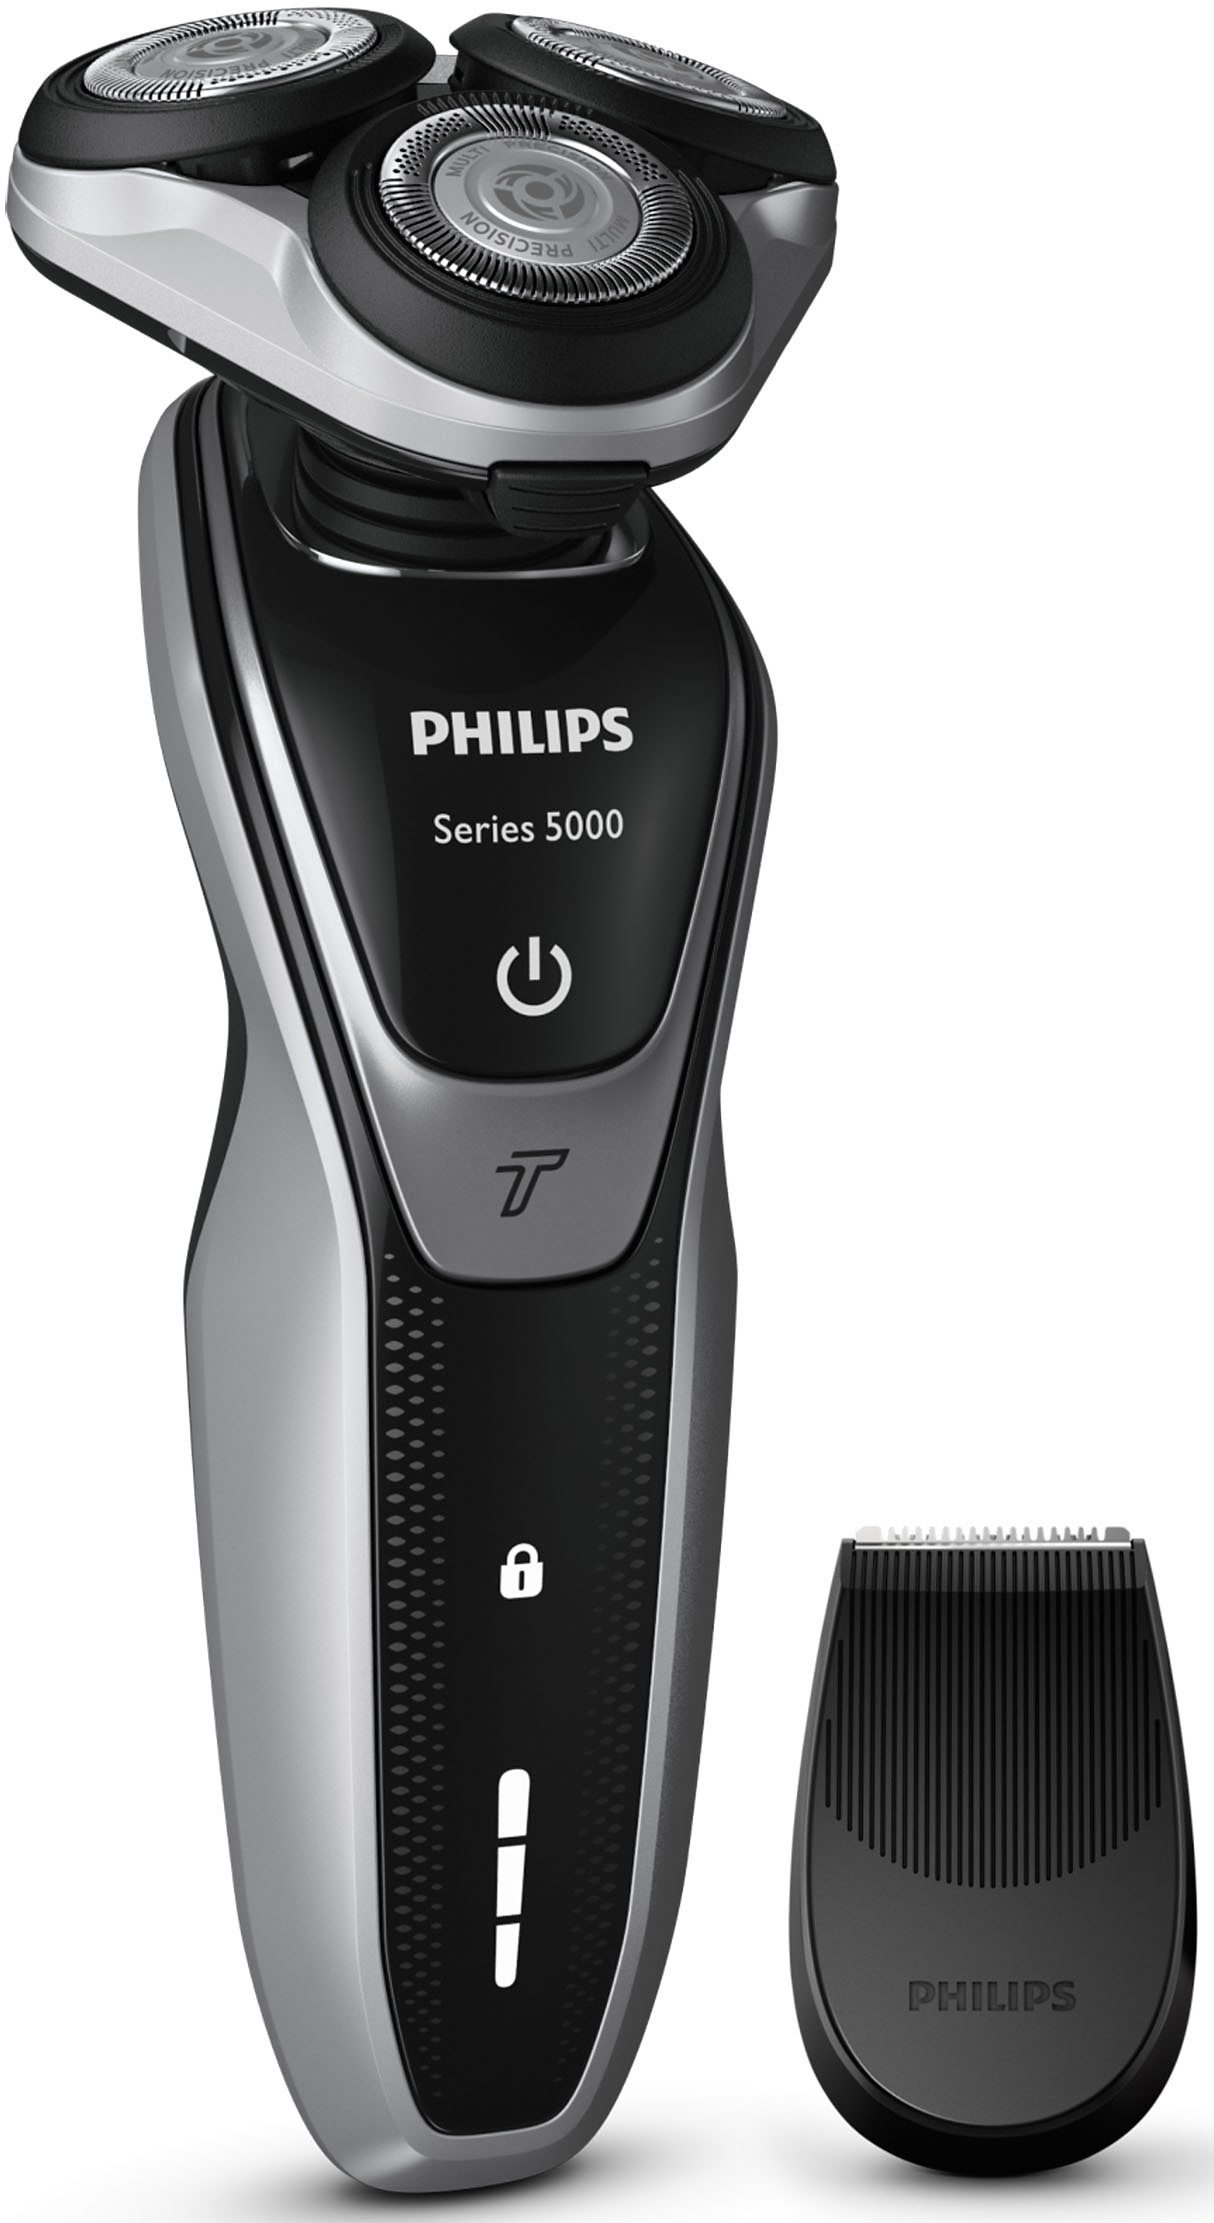 Philips s5585/35. Philips s5000 5110. Бритва Филипс s5585/35. Philips pt920 Series 5000.